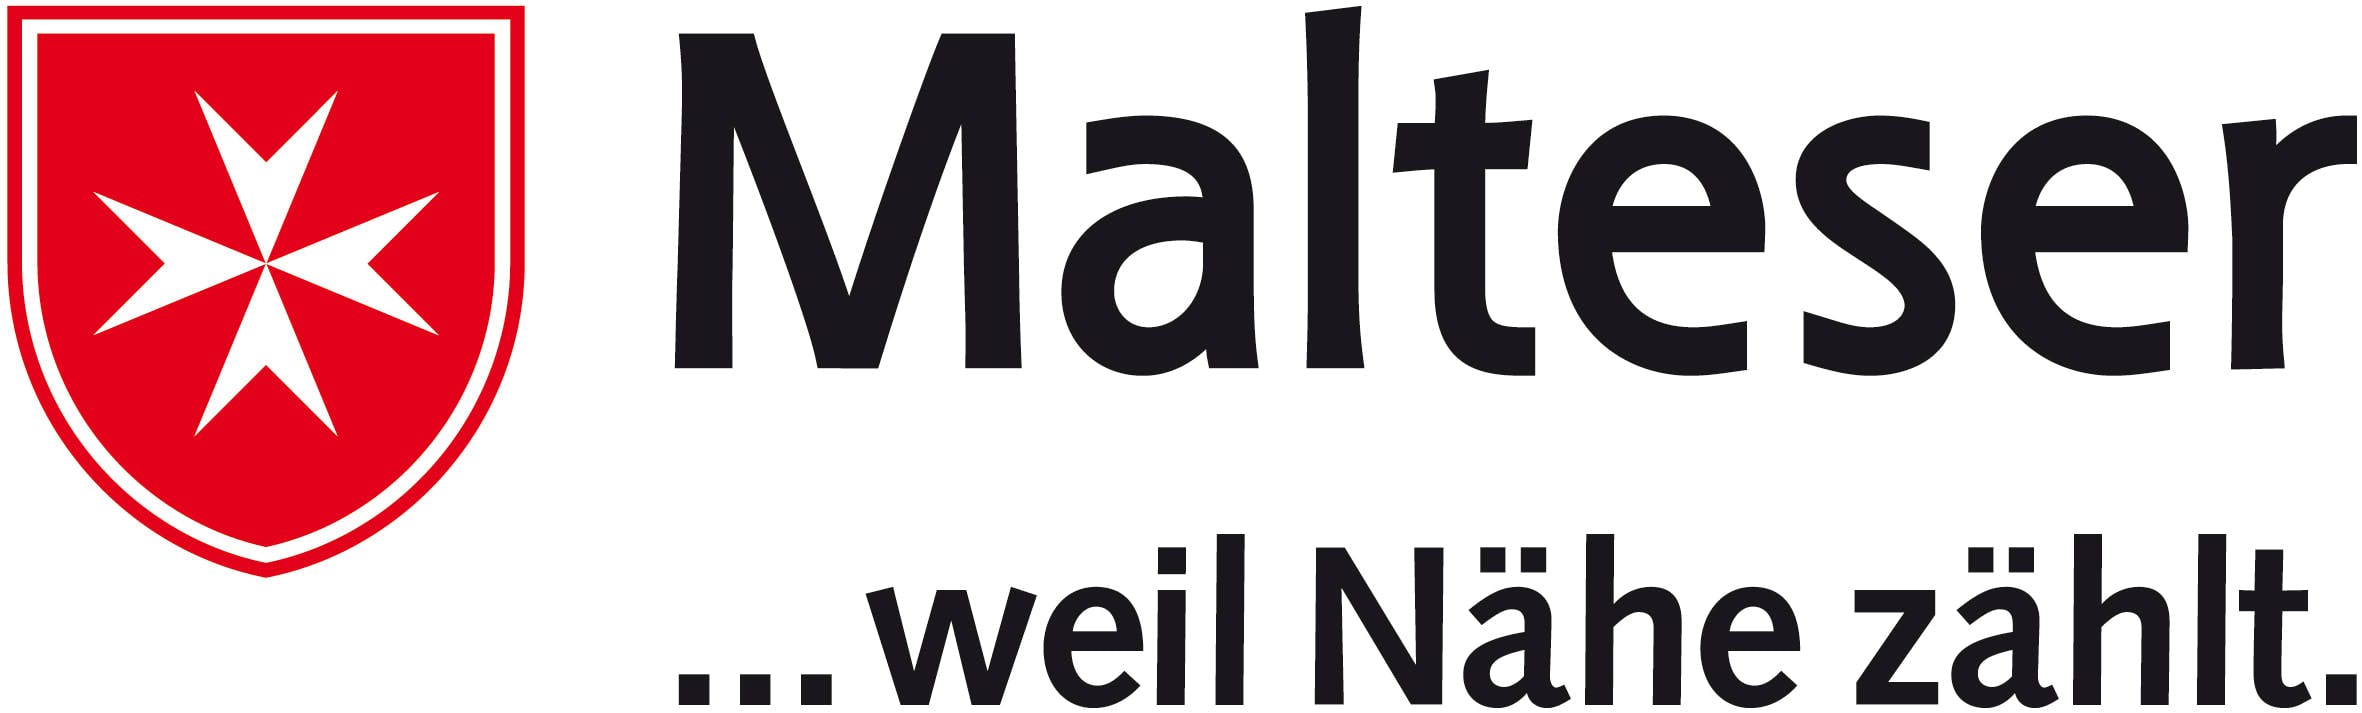 Malteser-Werke logo